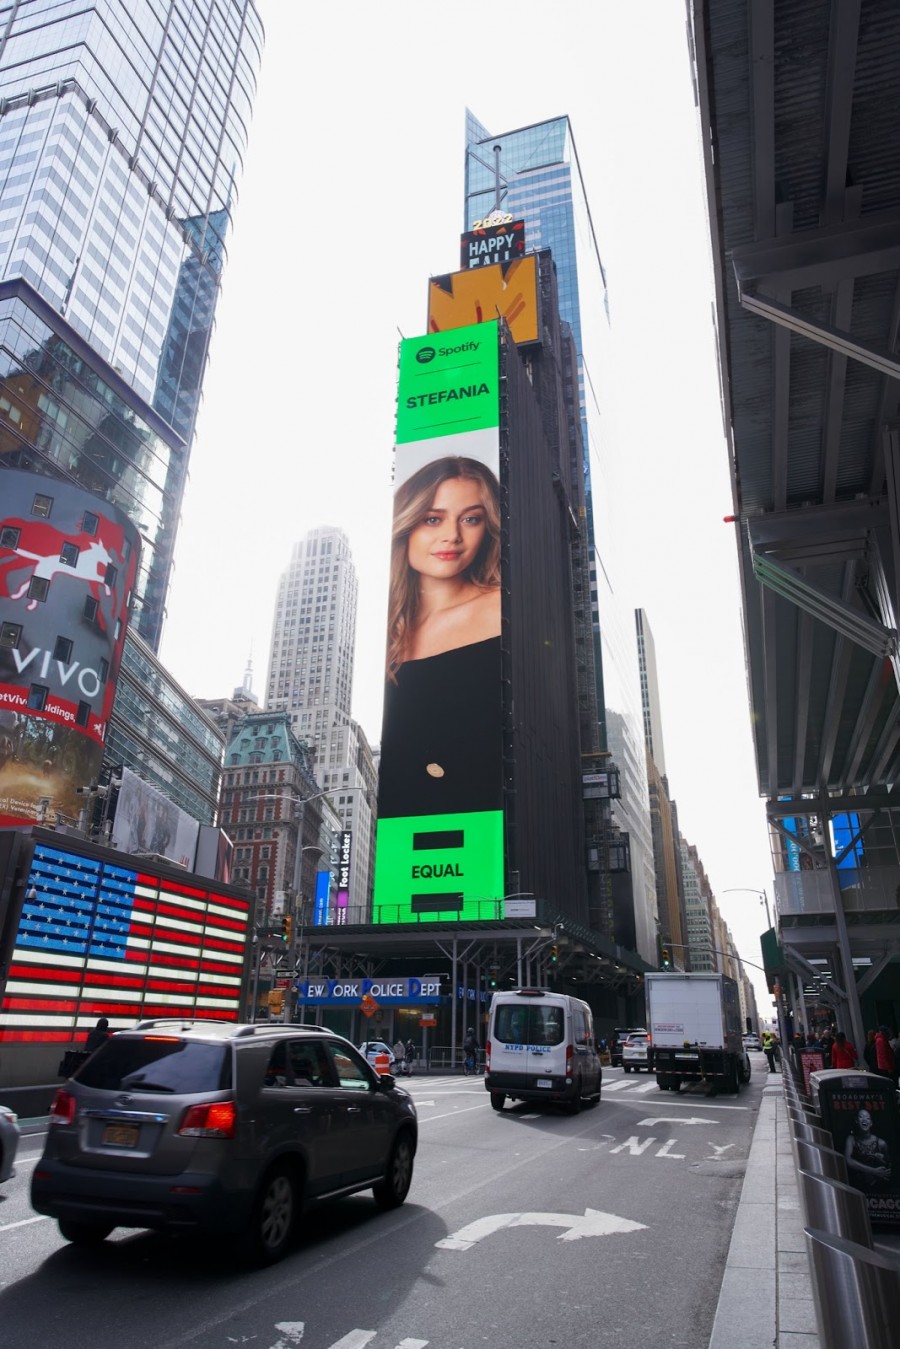 Στεφανία Λυμπερακάκη : Τώρα και σε Billboard στην Times Square.